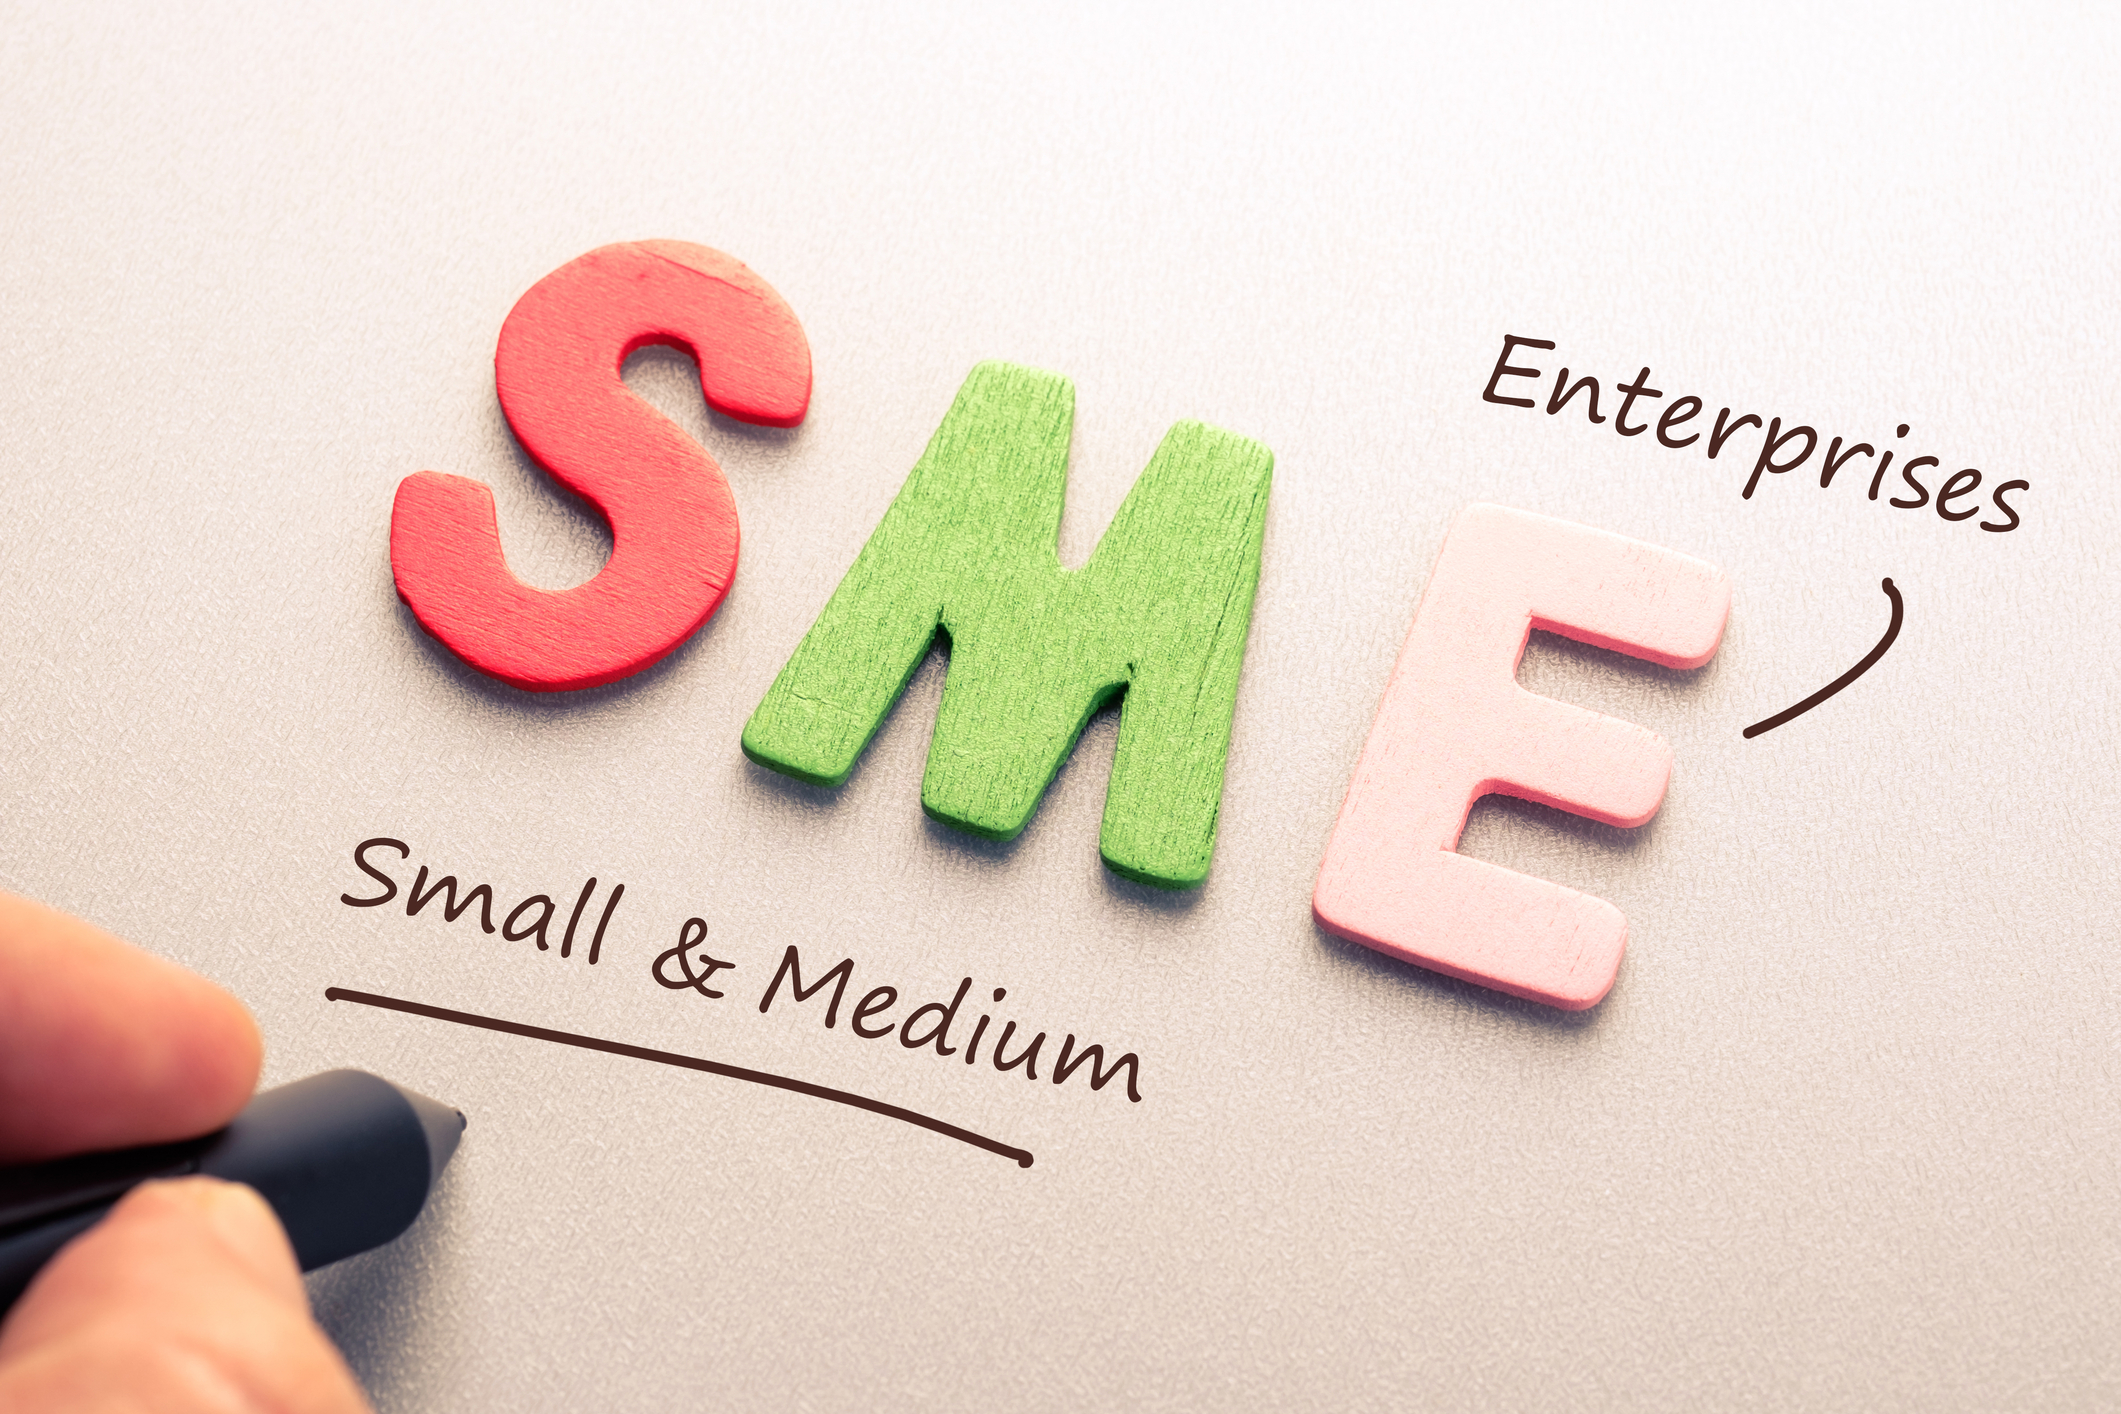 SME approach towards CSR activities - The CSR Journal